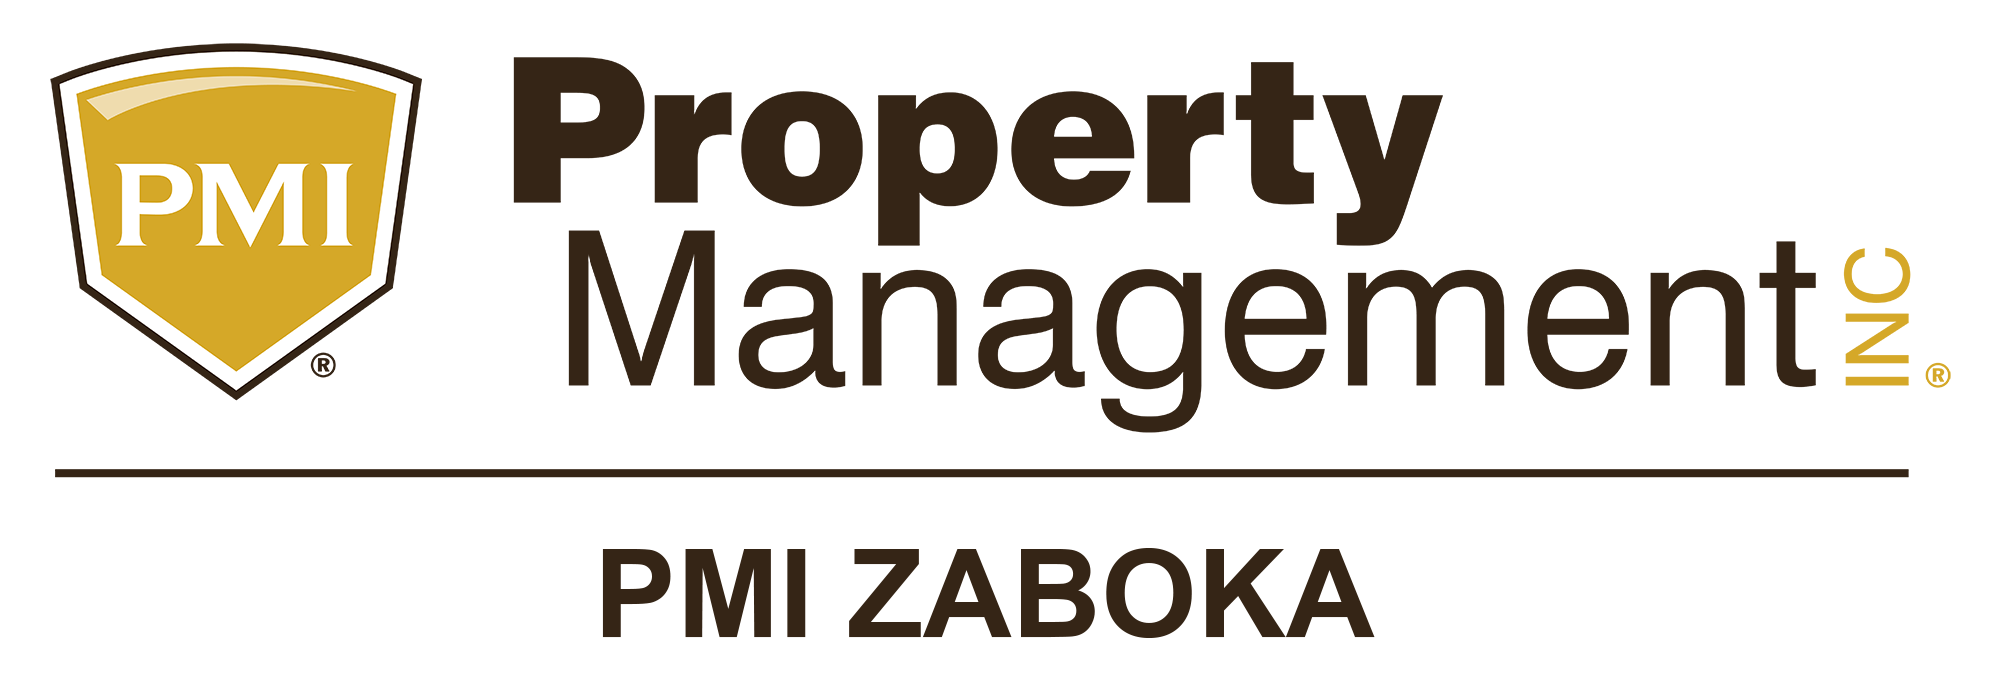 PMI Palm Beach County brand logo